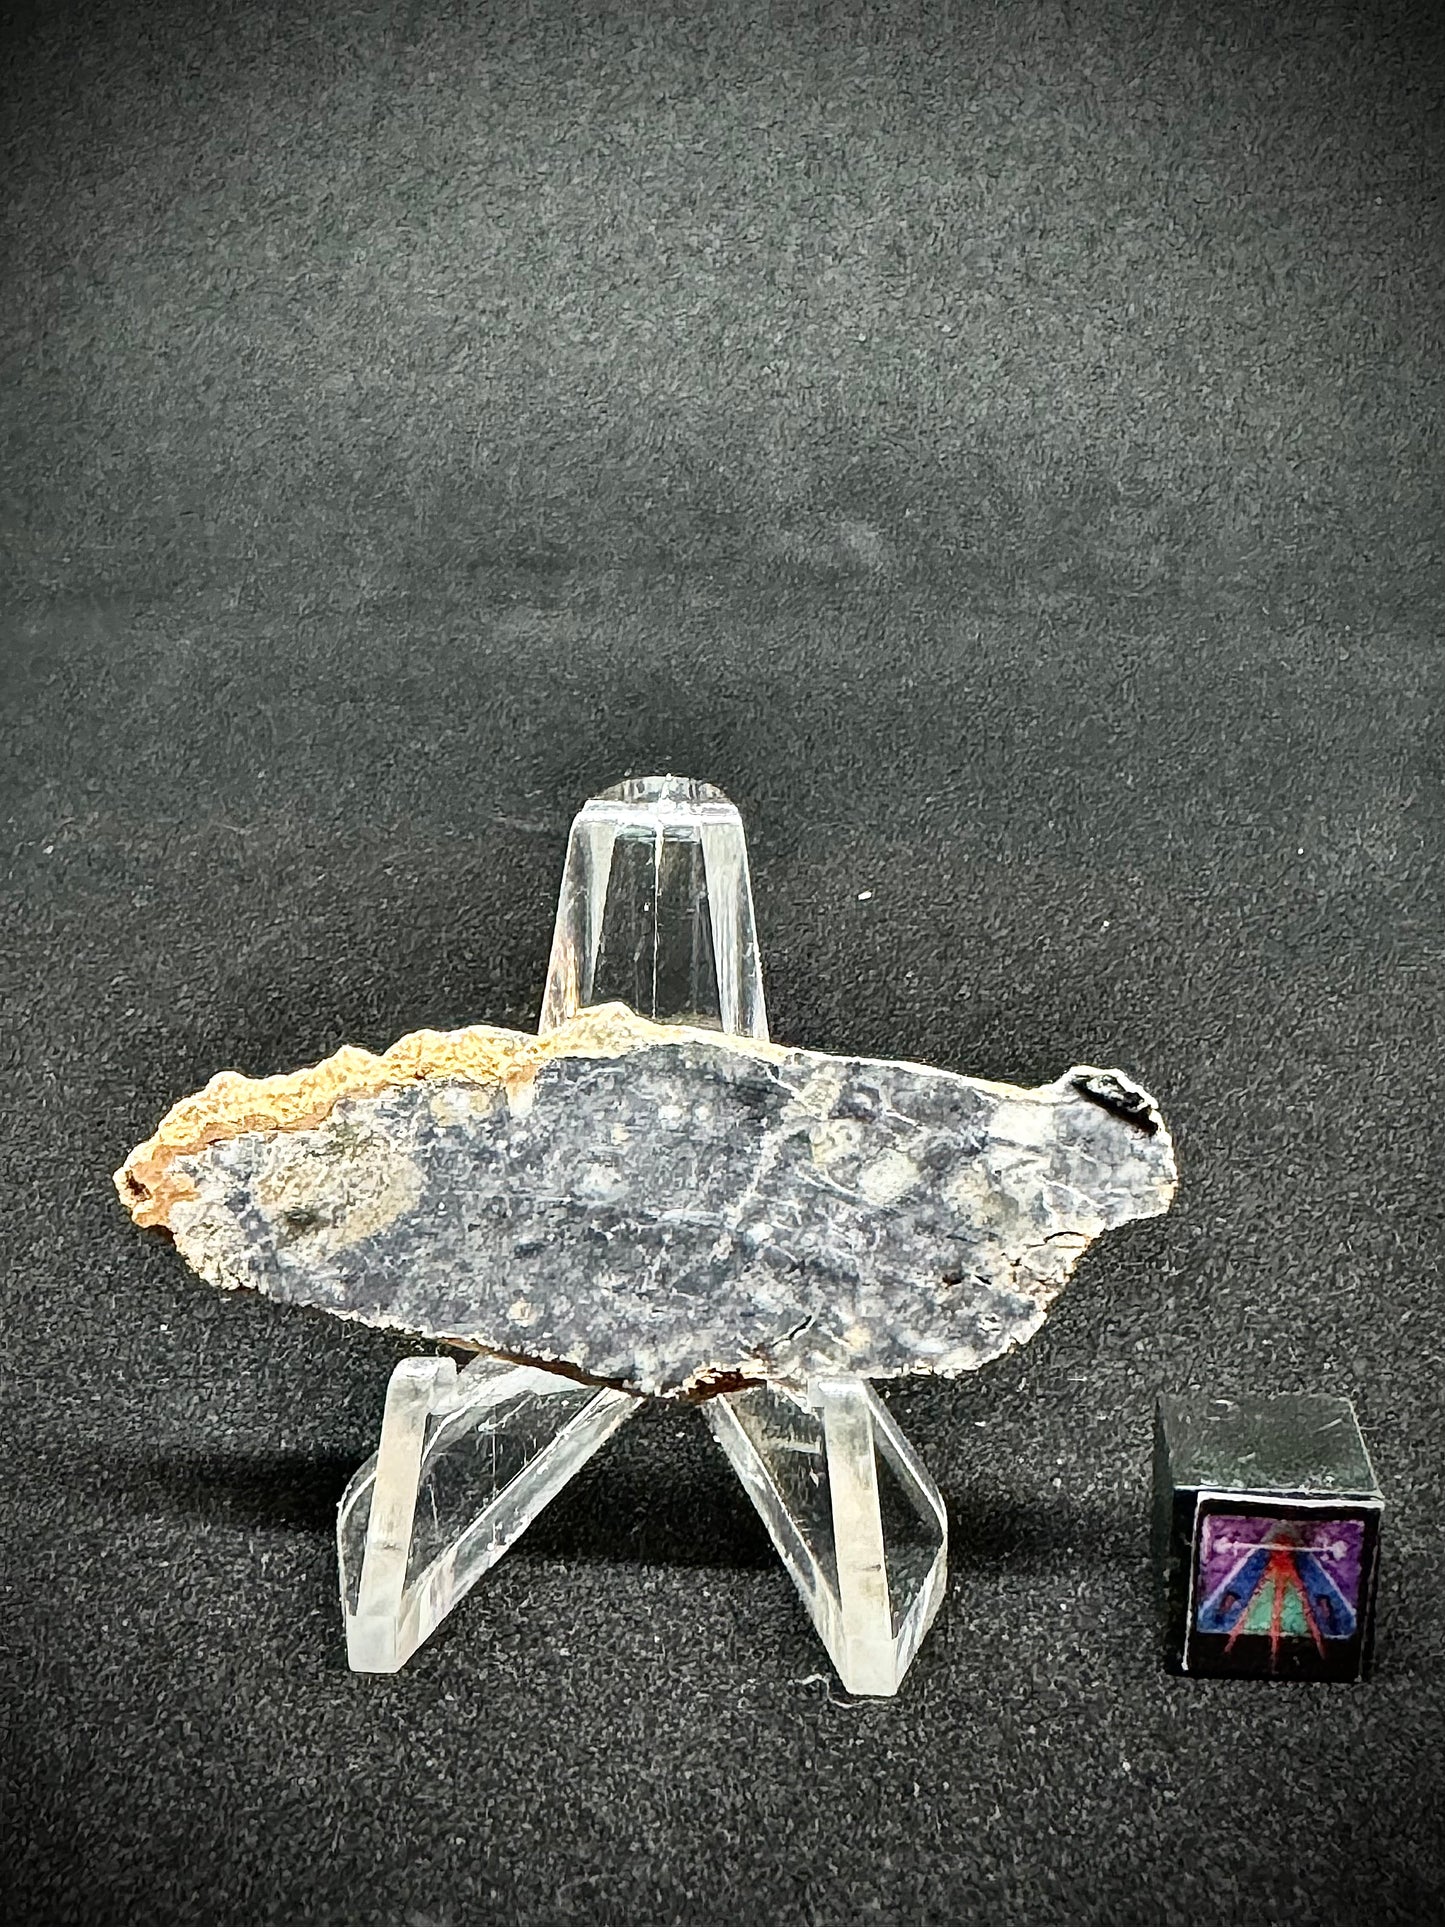 NWA 15373 Lunar Fragmental Breccia - Full Slice - 5.4g